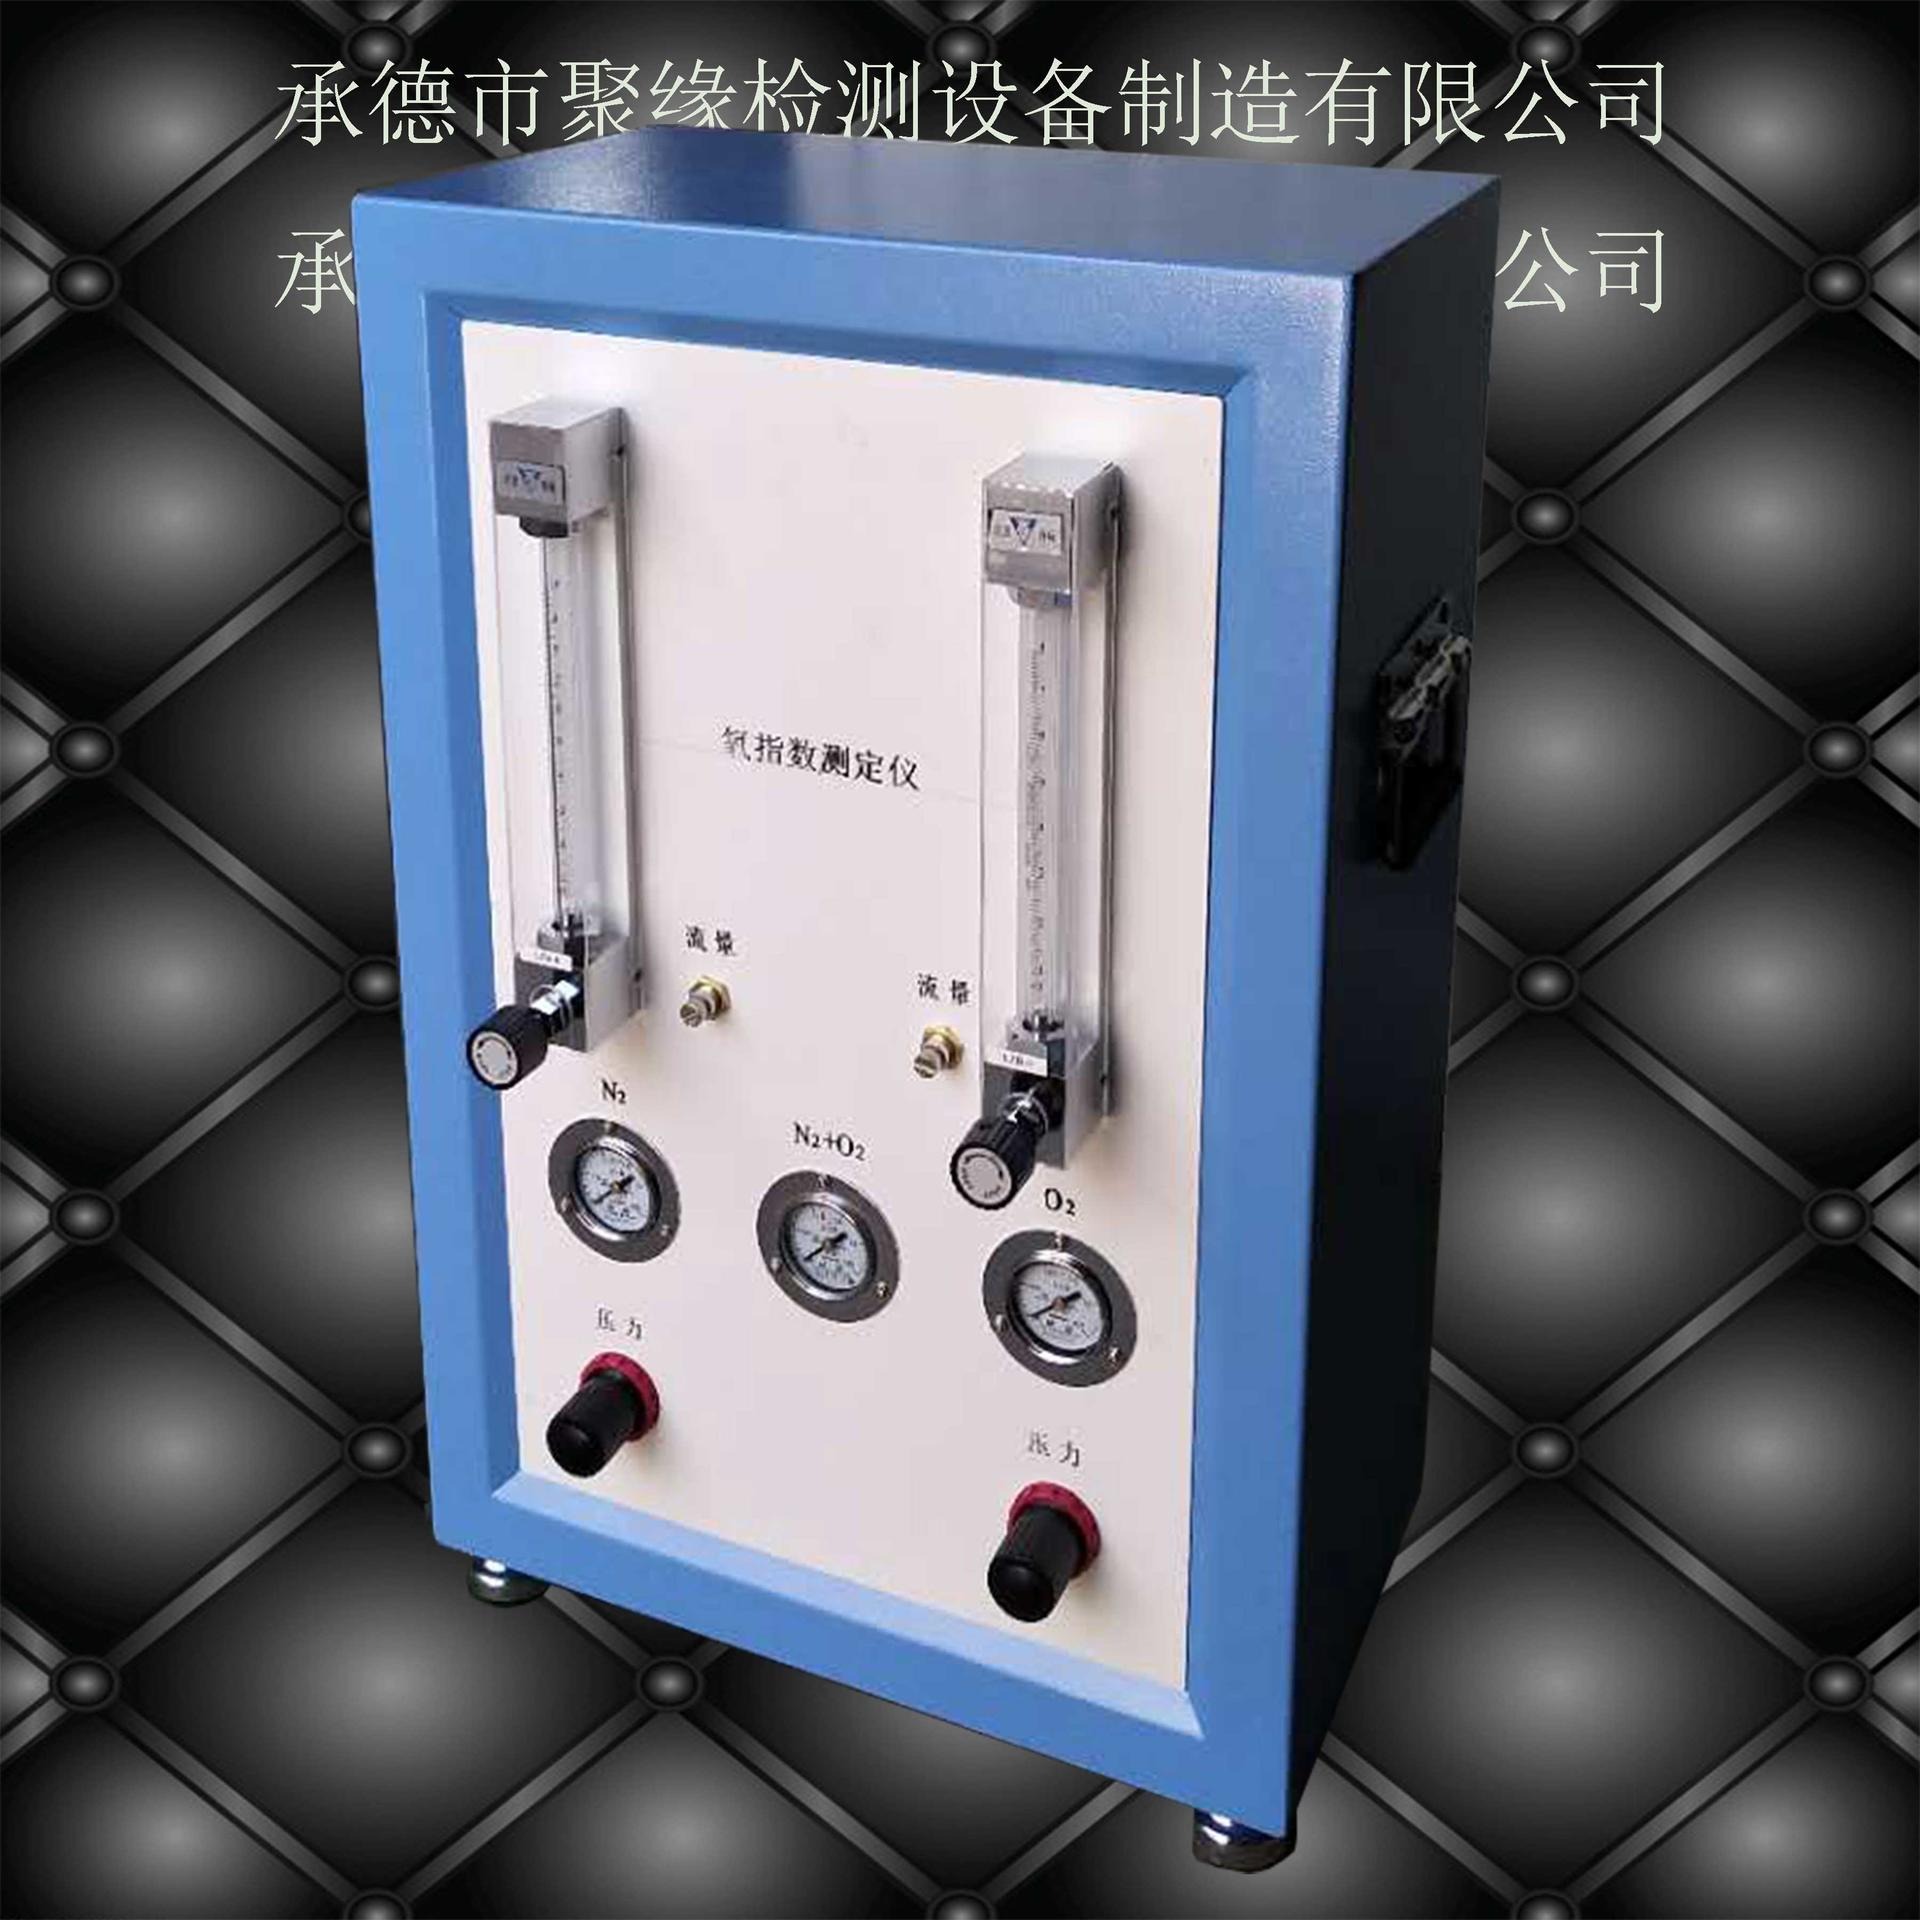 XYC-75氧指数测定仪  管材耐压试验机 承德聚缘专业研发制造非金属材料 试验机  燃烧测定仪